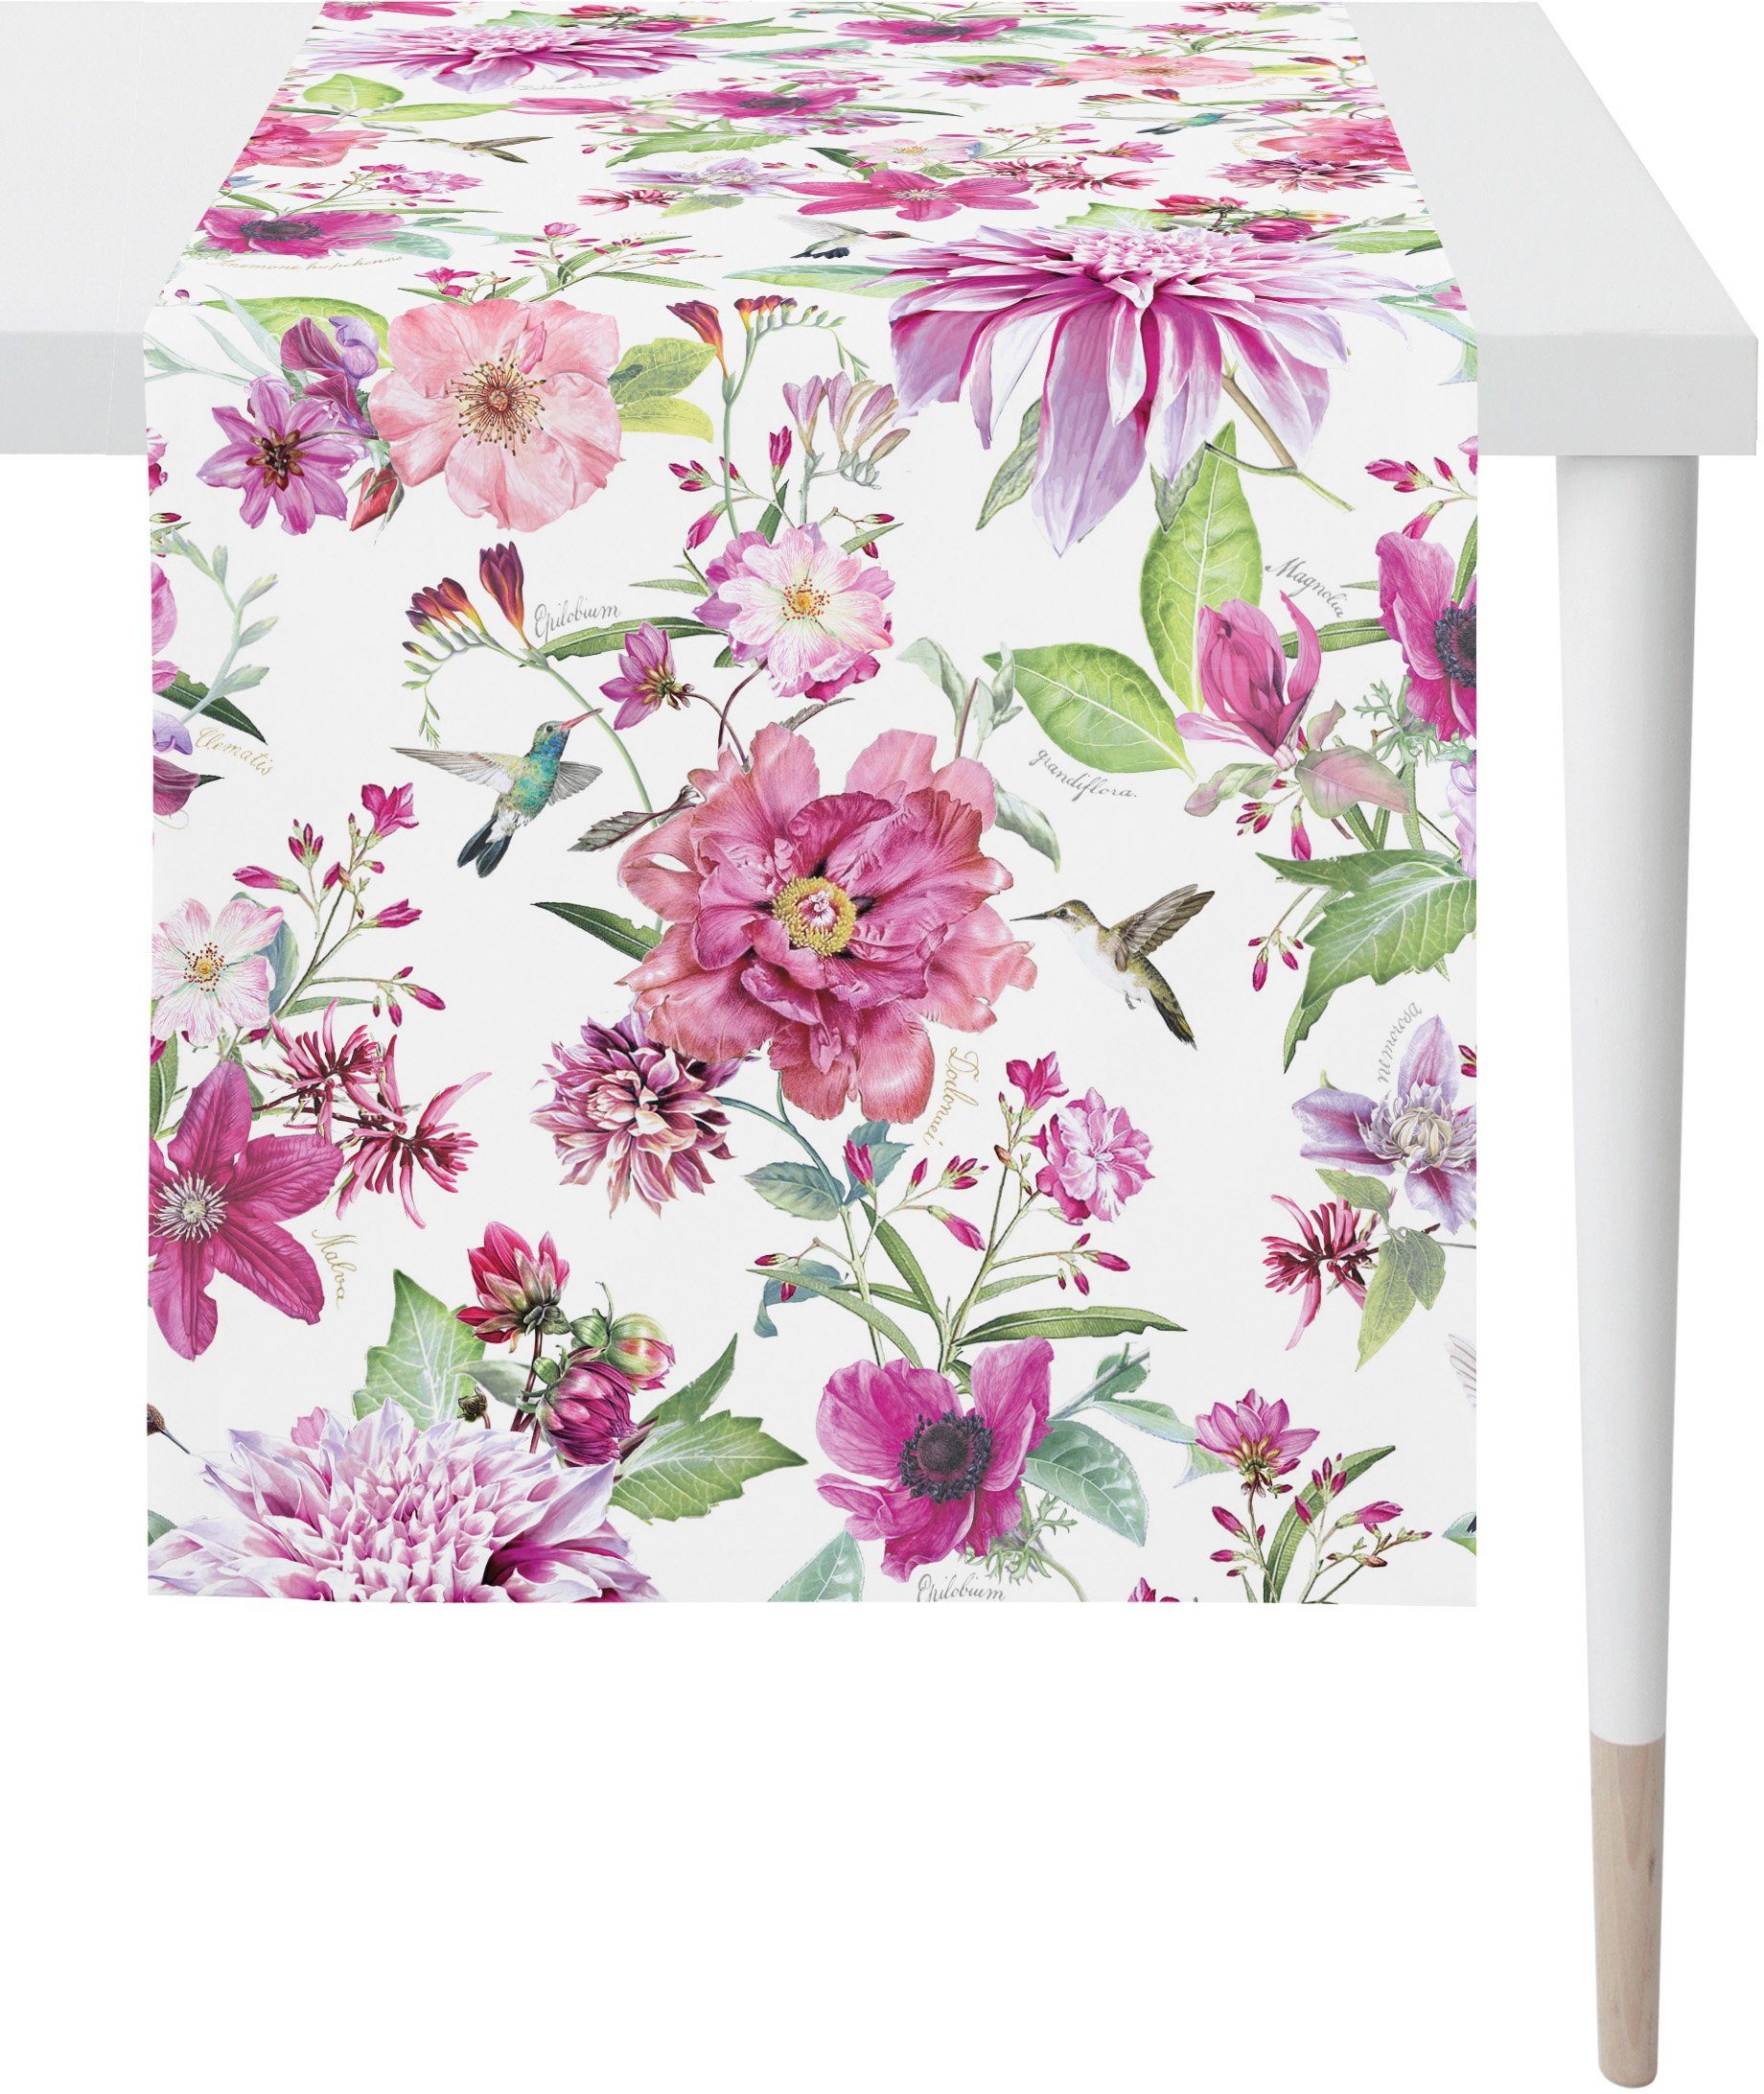 Tischläufer APELT 7305 (1-tlg), Sommerdeko, weiß/rosa/grün/natur Sommer Digitaldruck SUMMERTIME,